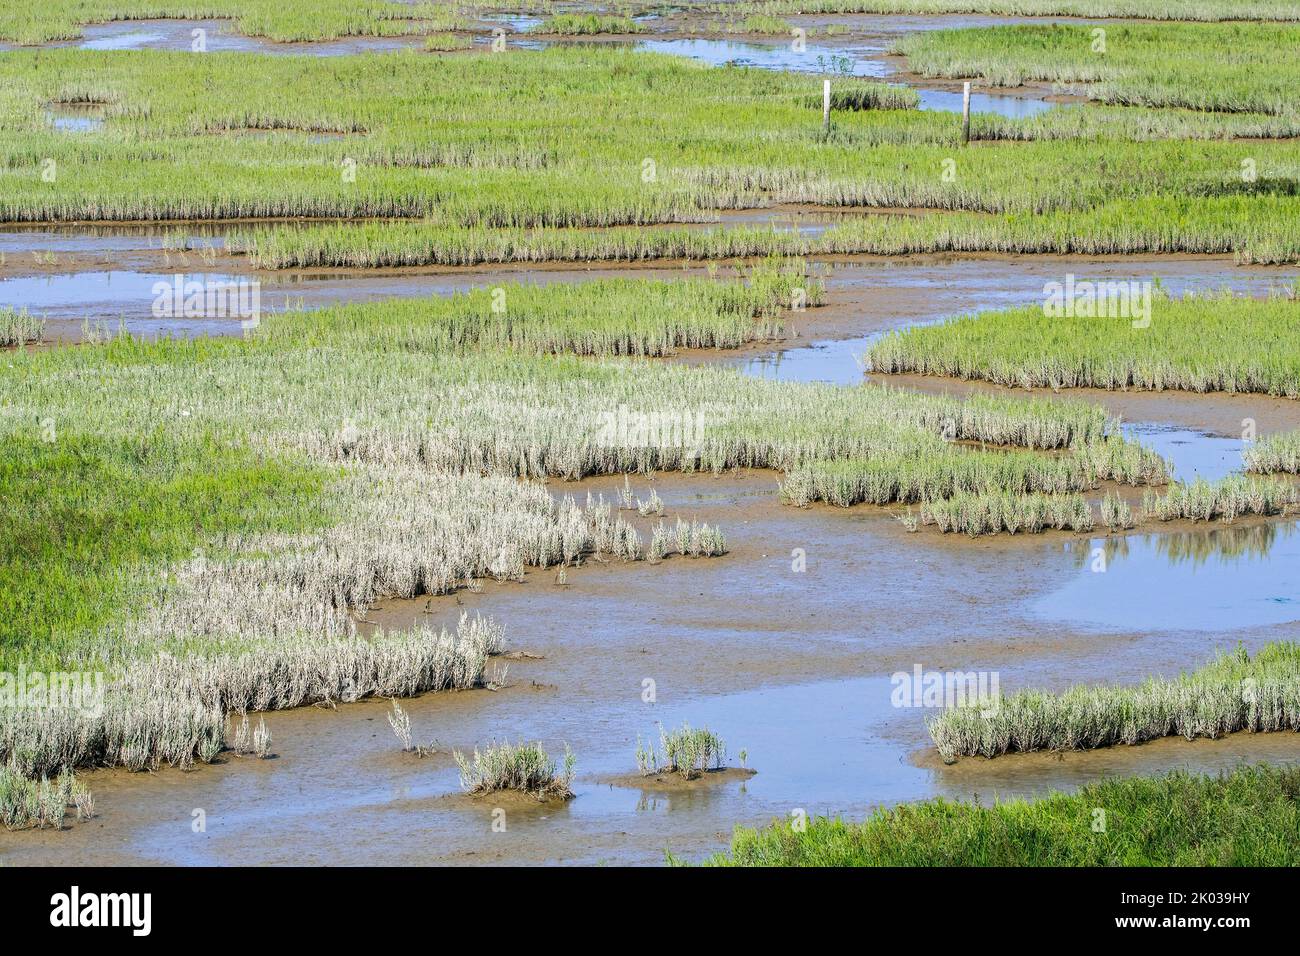 Vert glassmotte commun / marais samphir (Salicornia europaea) croissant dans le marais salin intertidal / saltmarsh, plaine de Zwin à la fin de l'été, Knokke-Heist, Belgique Banque D'Images